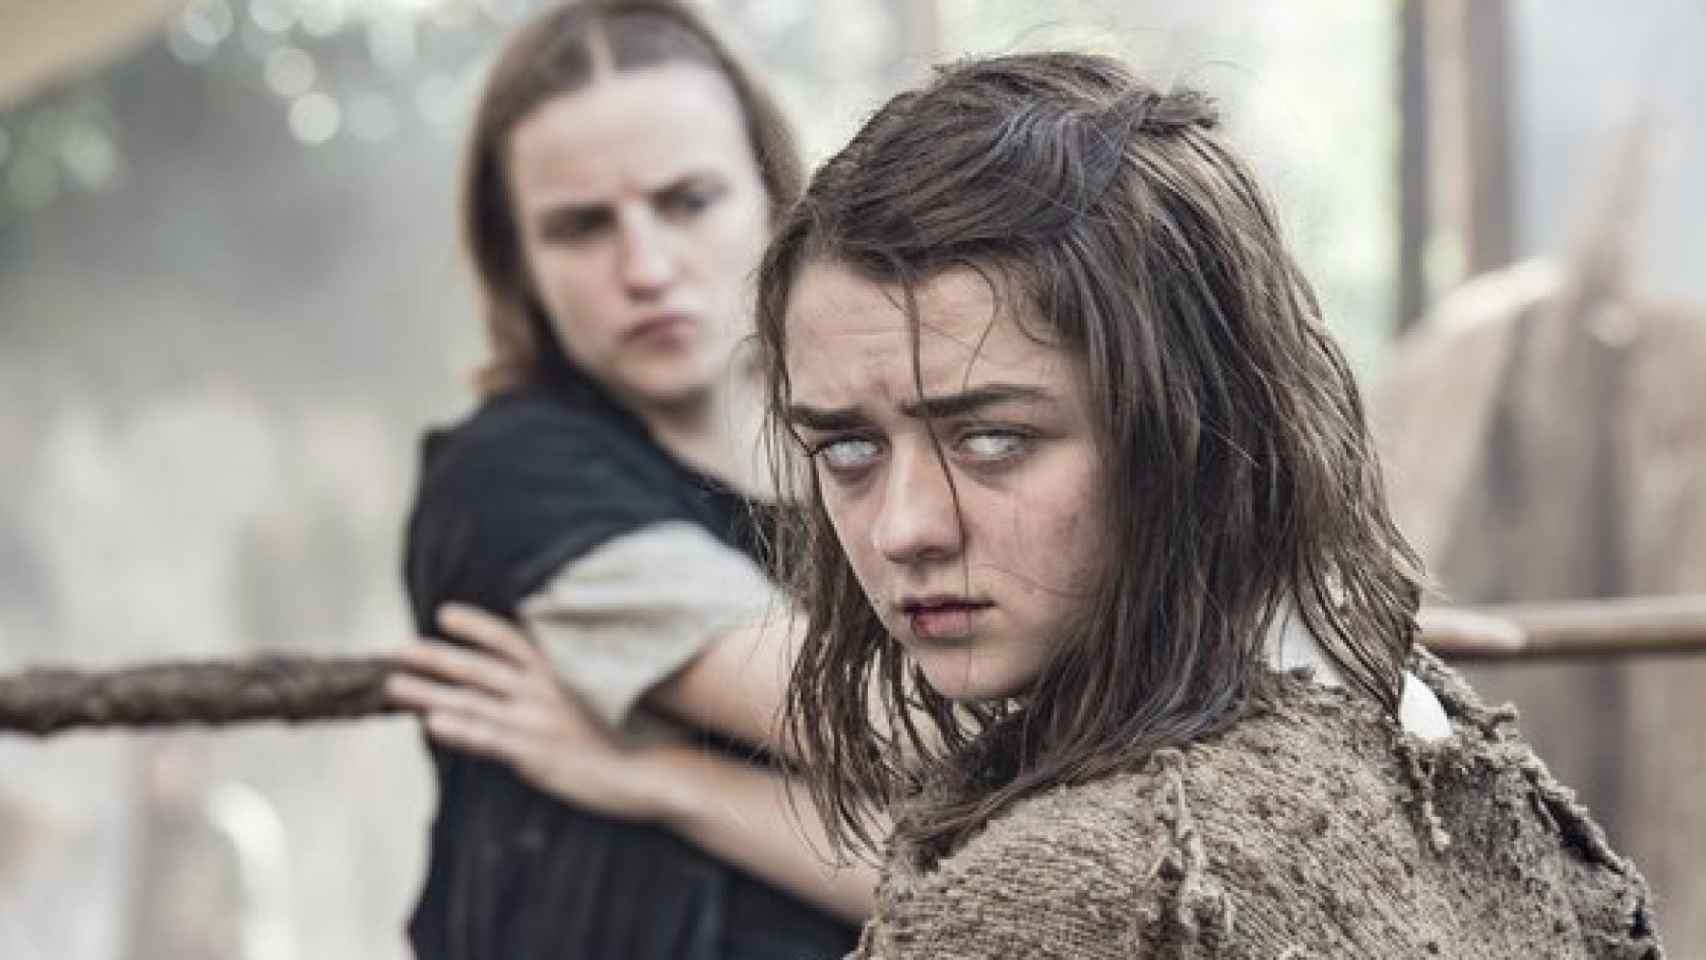 Maisie William da vida a Arya Stark y está nominada en la categoría de Mejor actriz de reparto.